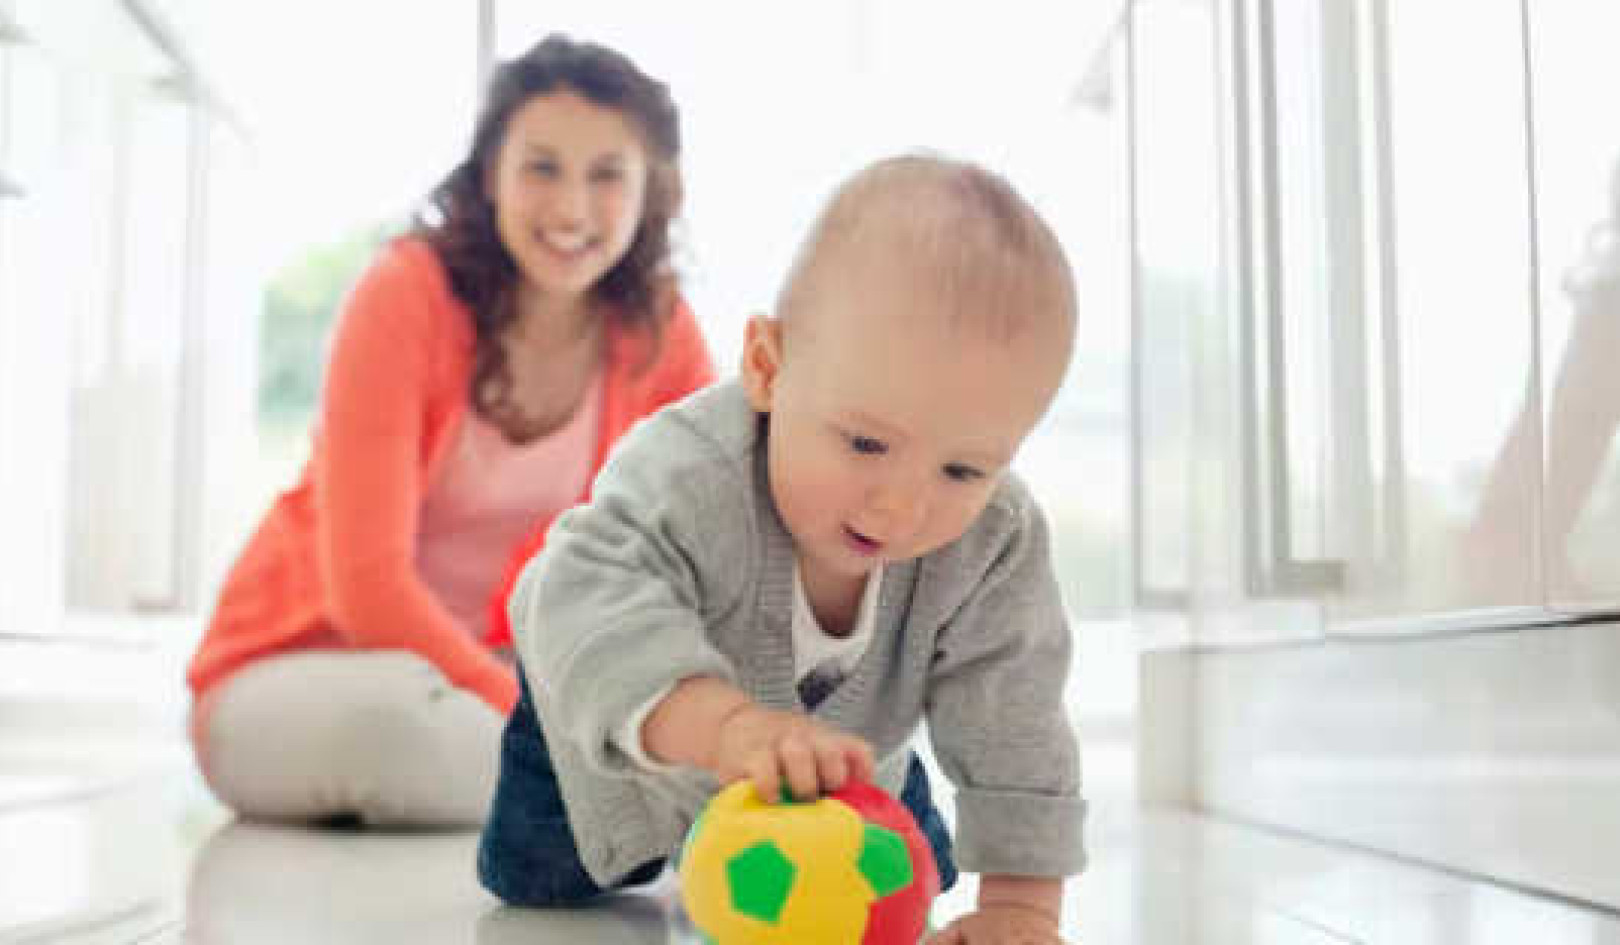 Sådan får du spædbørn masser af nødvendig aktiv bevægelse og leg